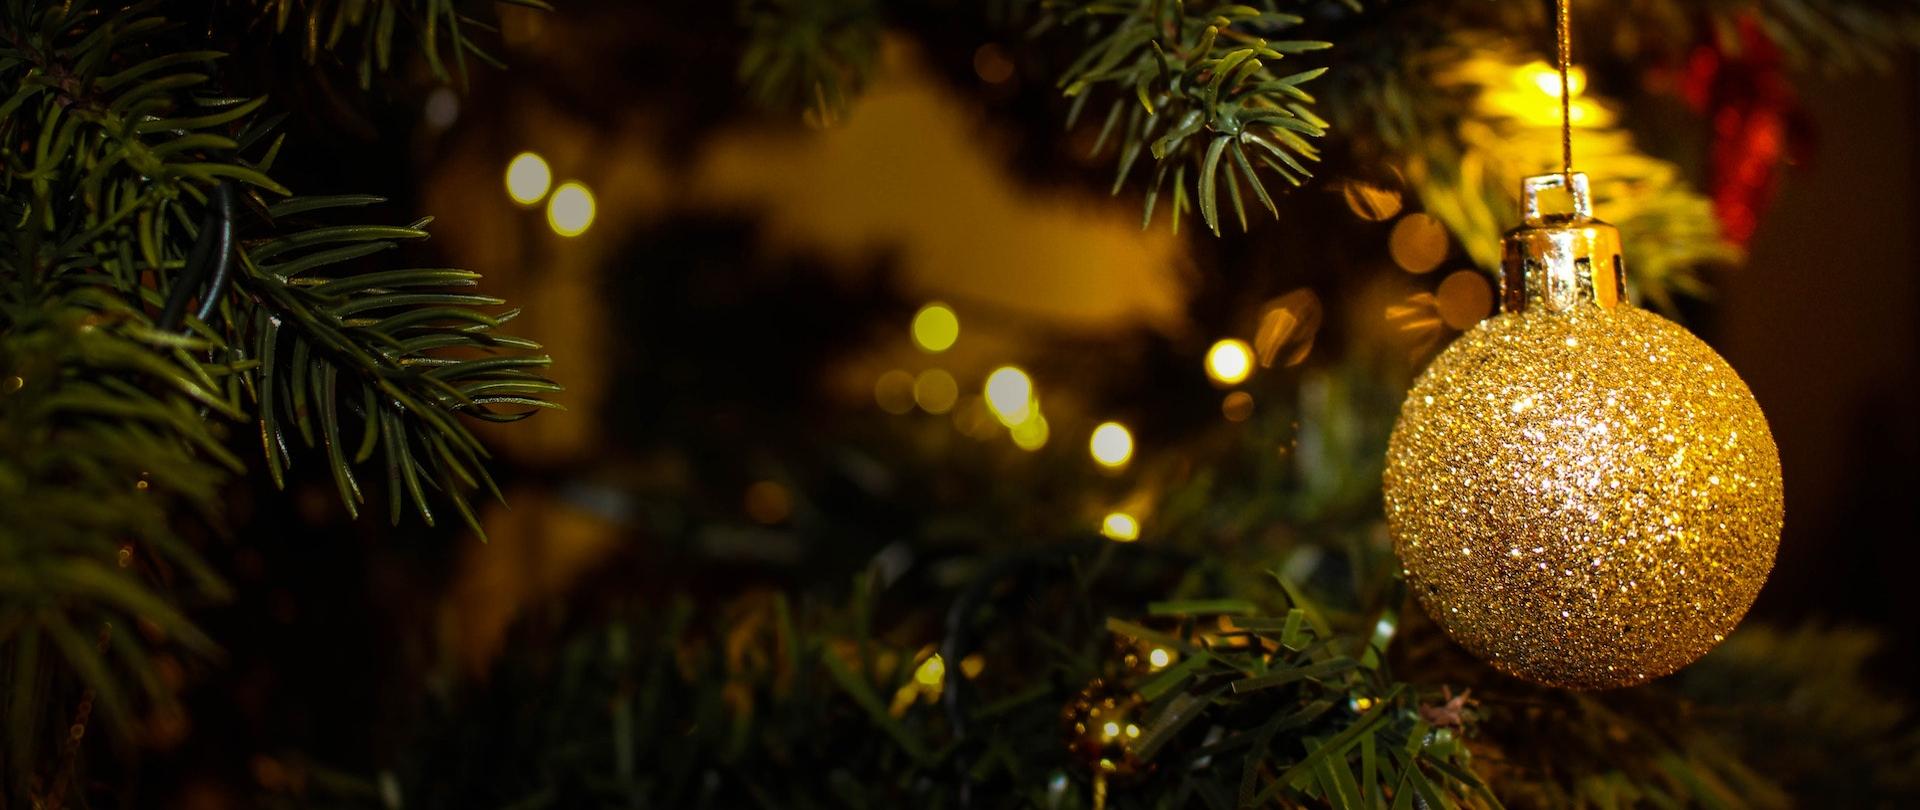 Zdjęcie przedstawiające zbliżenie na gałązki świątecznej choinki. Na jednek z gałązek wisi złota bombka.